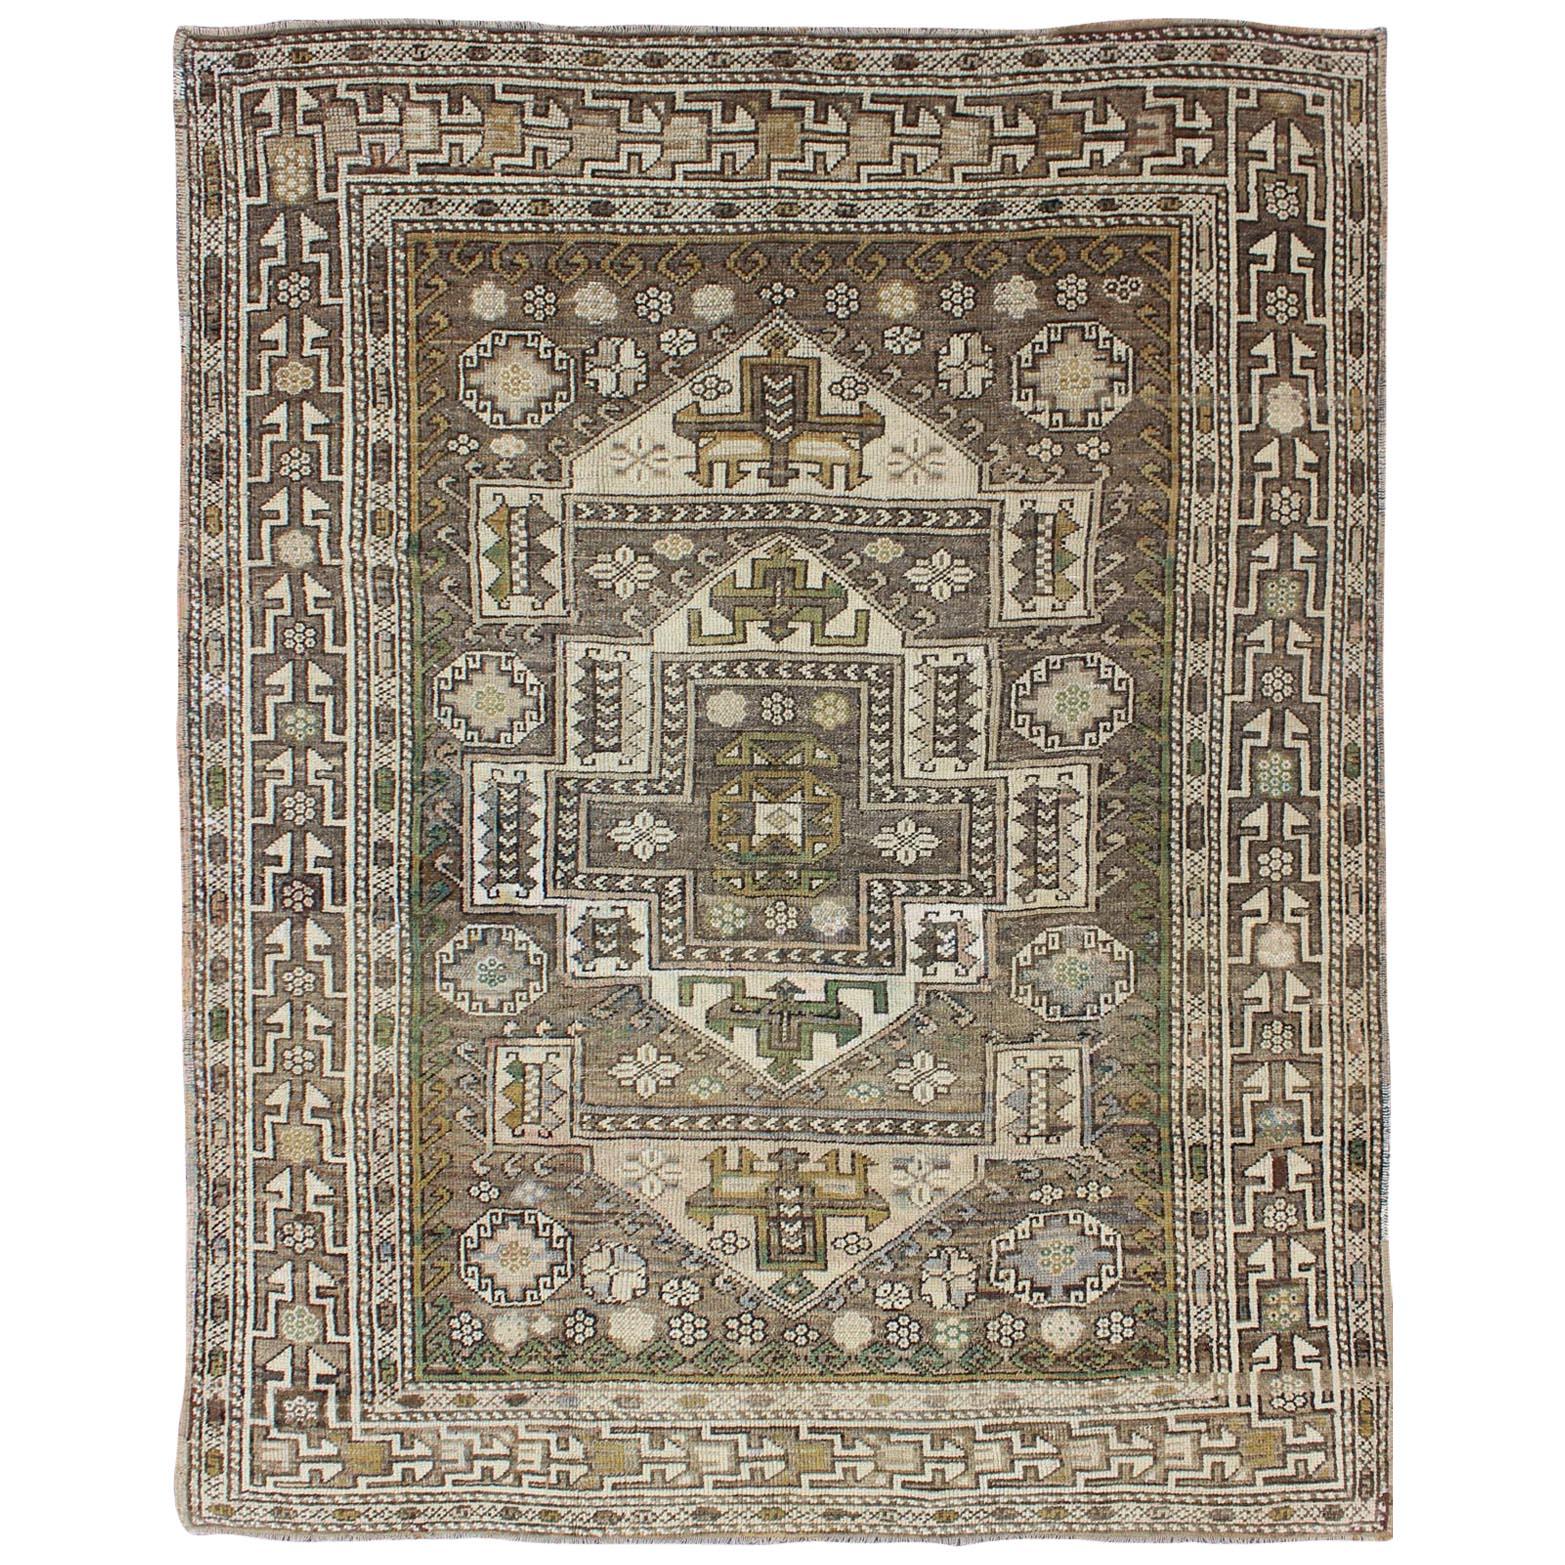 Antiker türkischer Oushak-Teppich mit subgeometrischem Medaillon in Grün und Braun